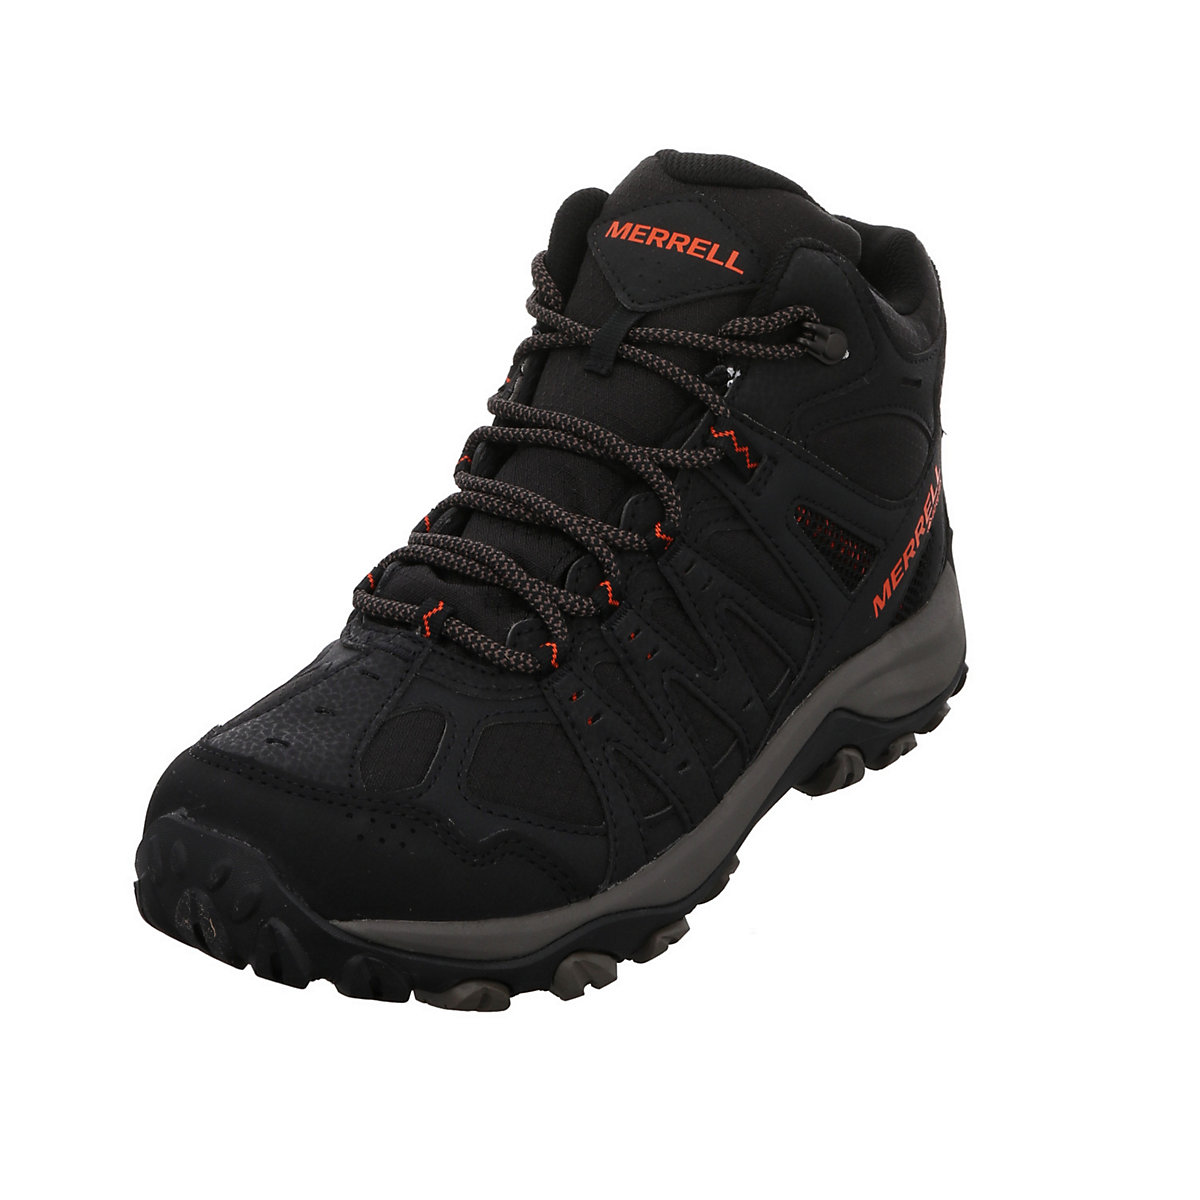 MERRELL Herren Outdoor Schuhe Accentor 3 Sport GTX Outdoorschuh Wandern Trekking Synthetikkombination uni Outdoorschuhe schwarz/rot